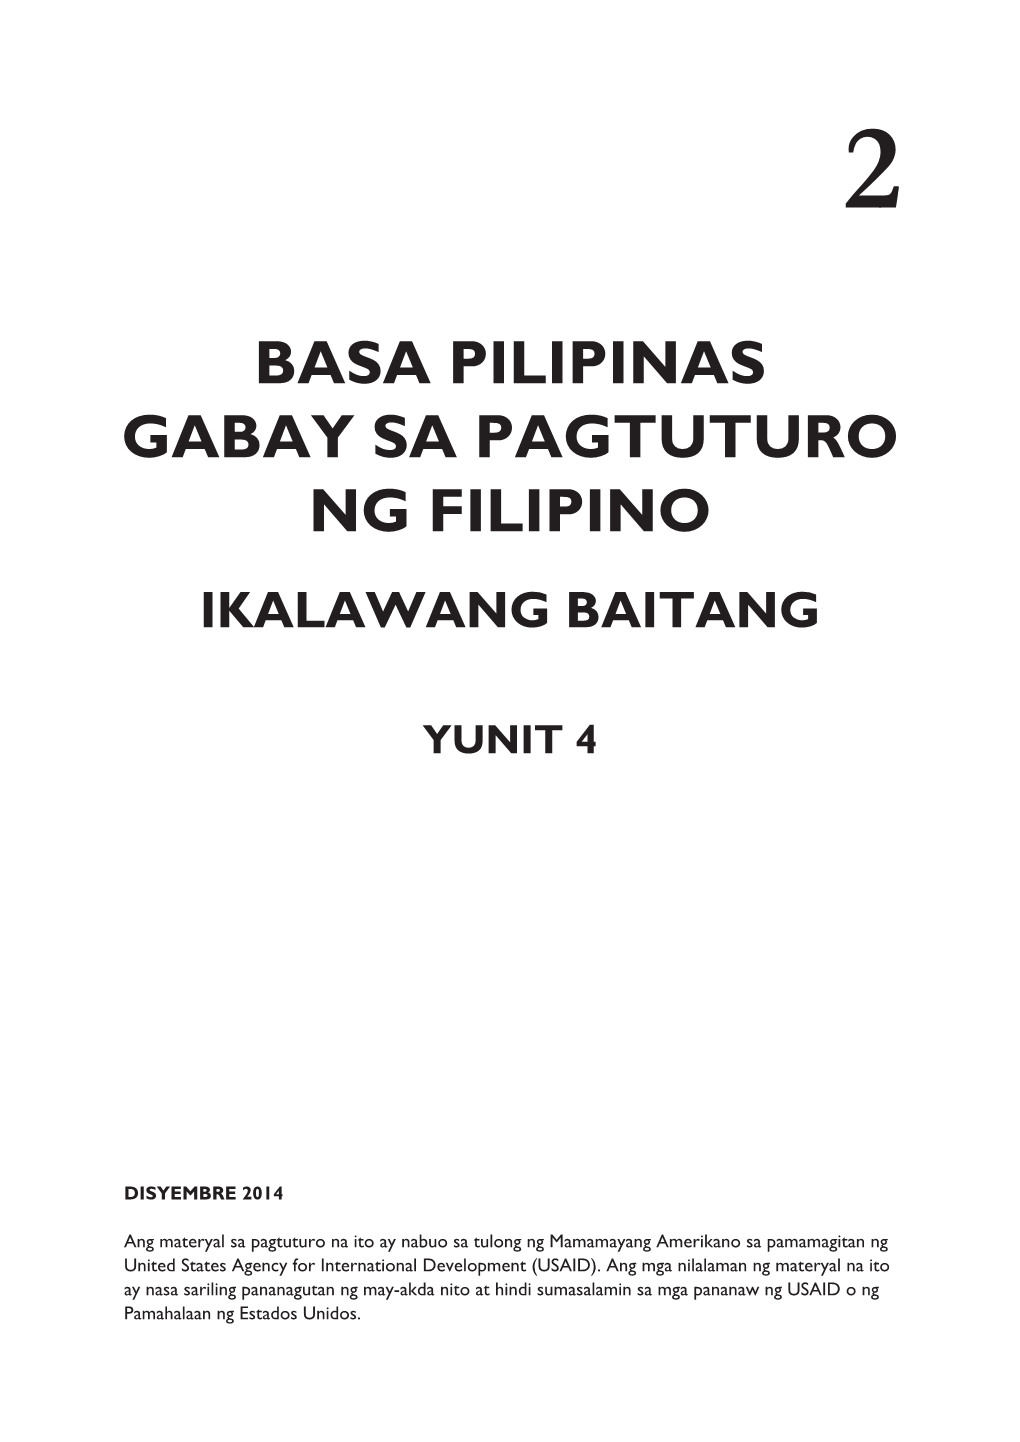 BASA PILIPINAS Gabay Sa Pagtuturo Ng Filipino IKALAWANG Baitang